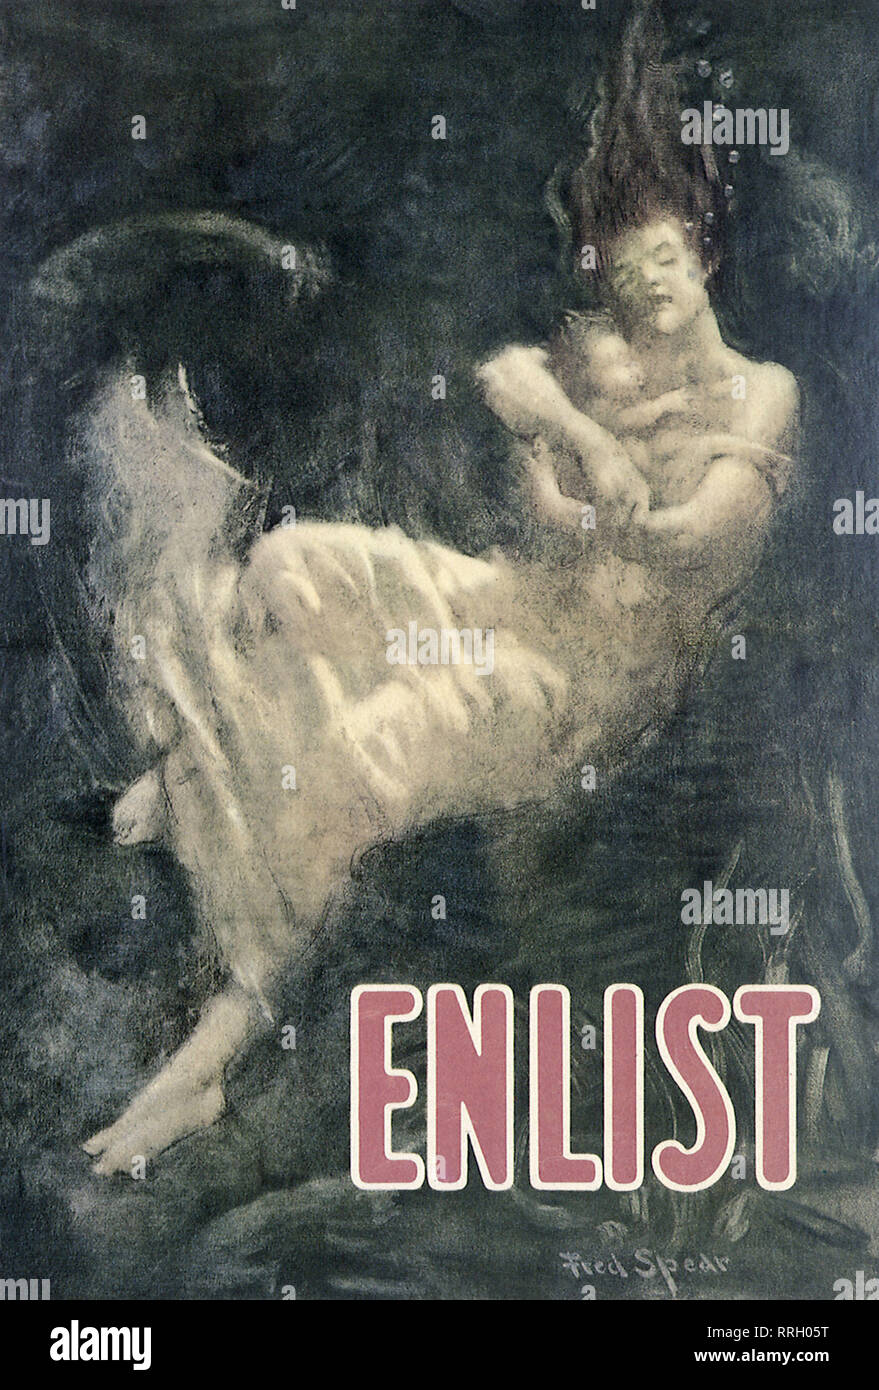 Enlist!. Stock Photo